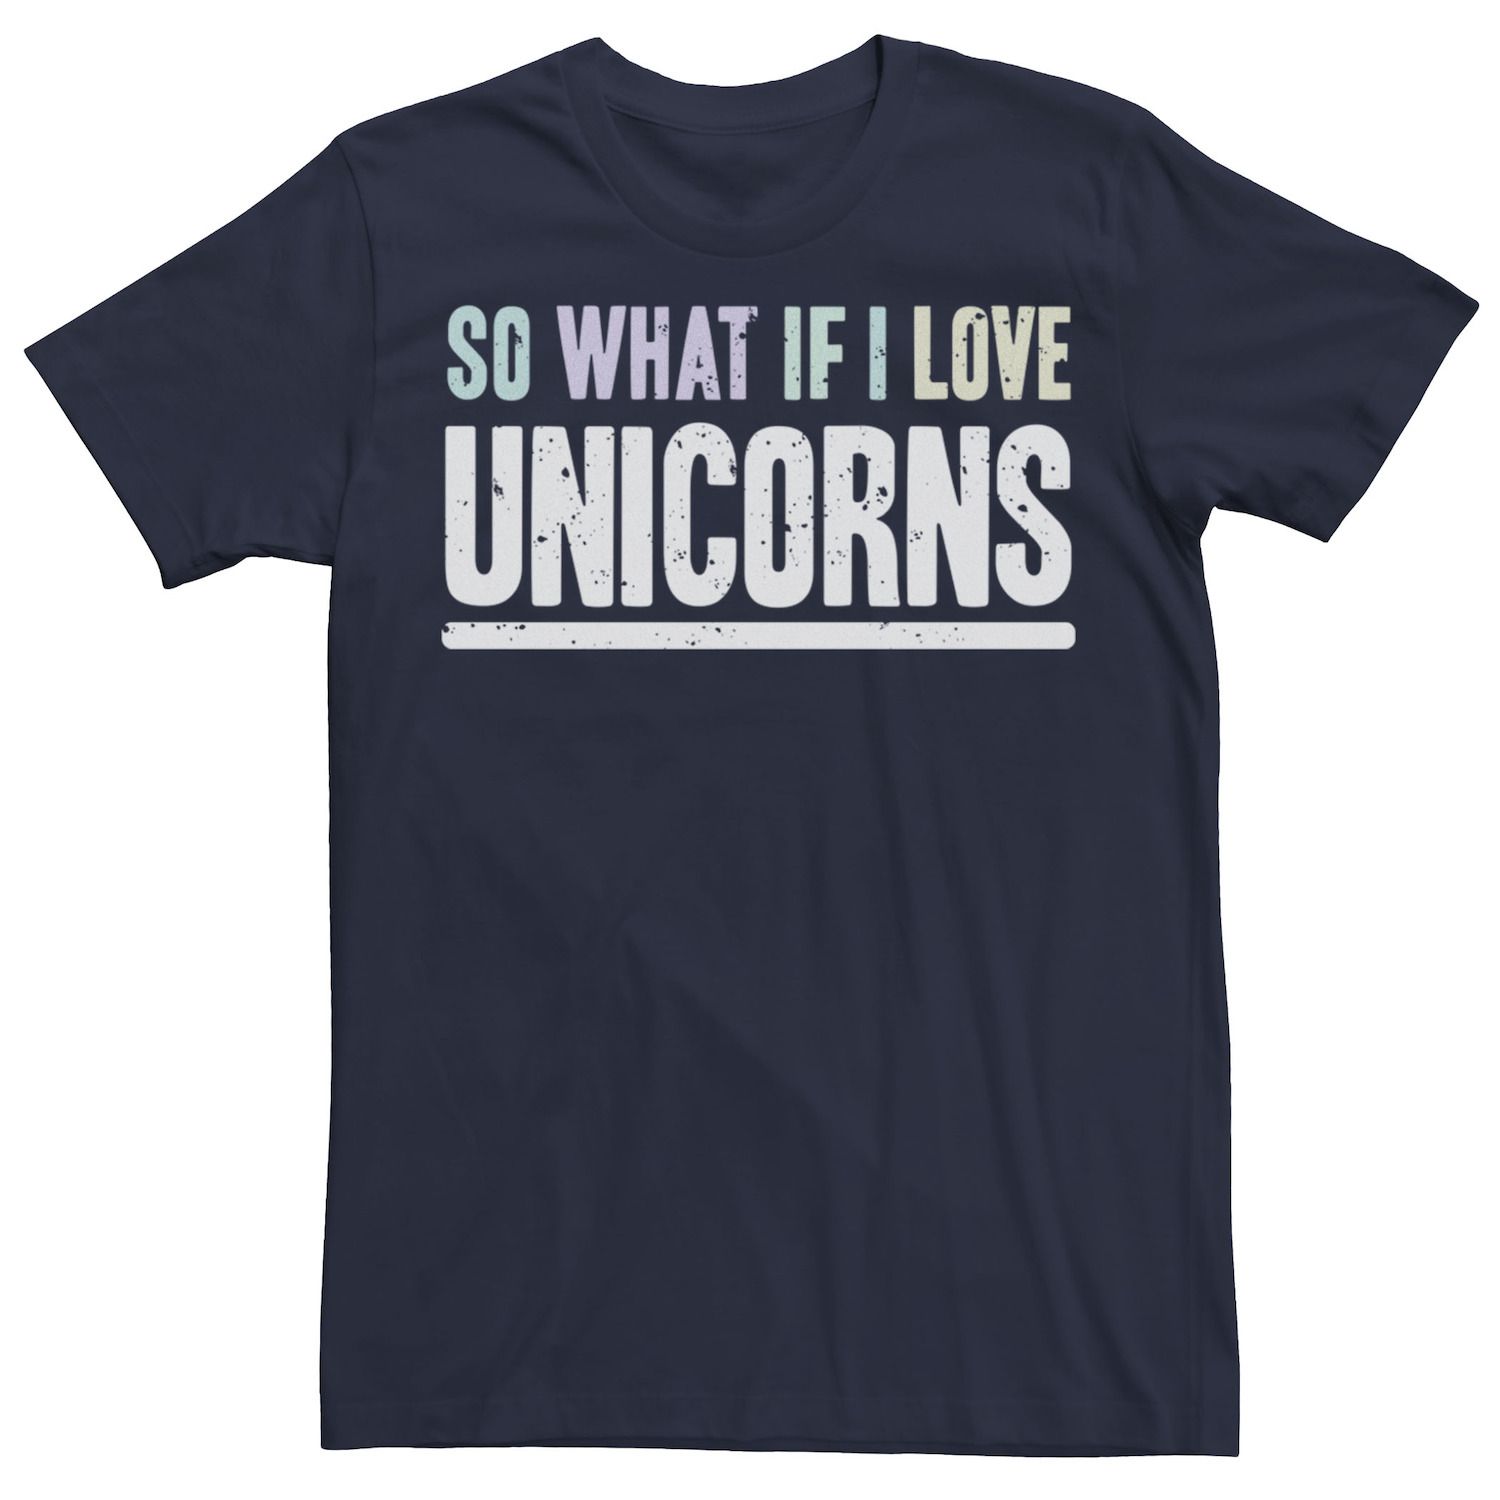 Мужская футболка So What If I Love Unicorns с ярким текстом и графическим рисунком Licensed Character, синий